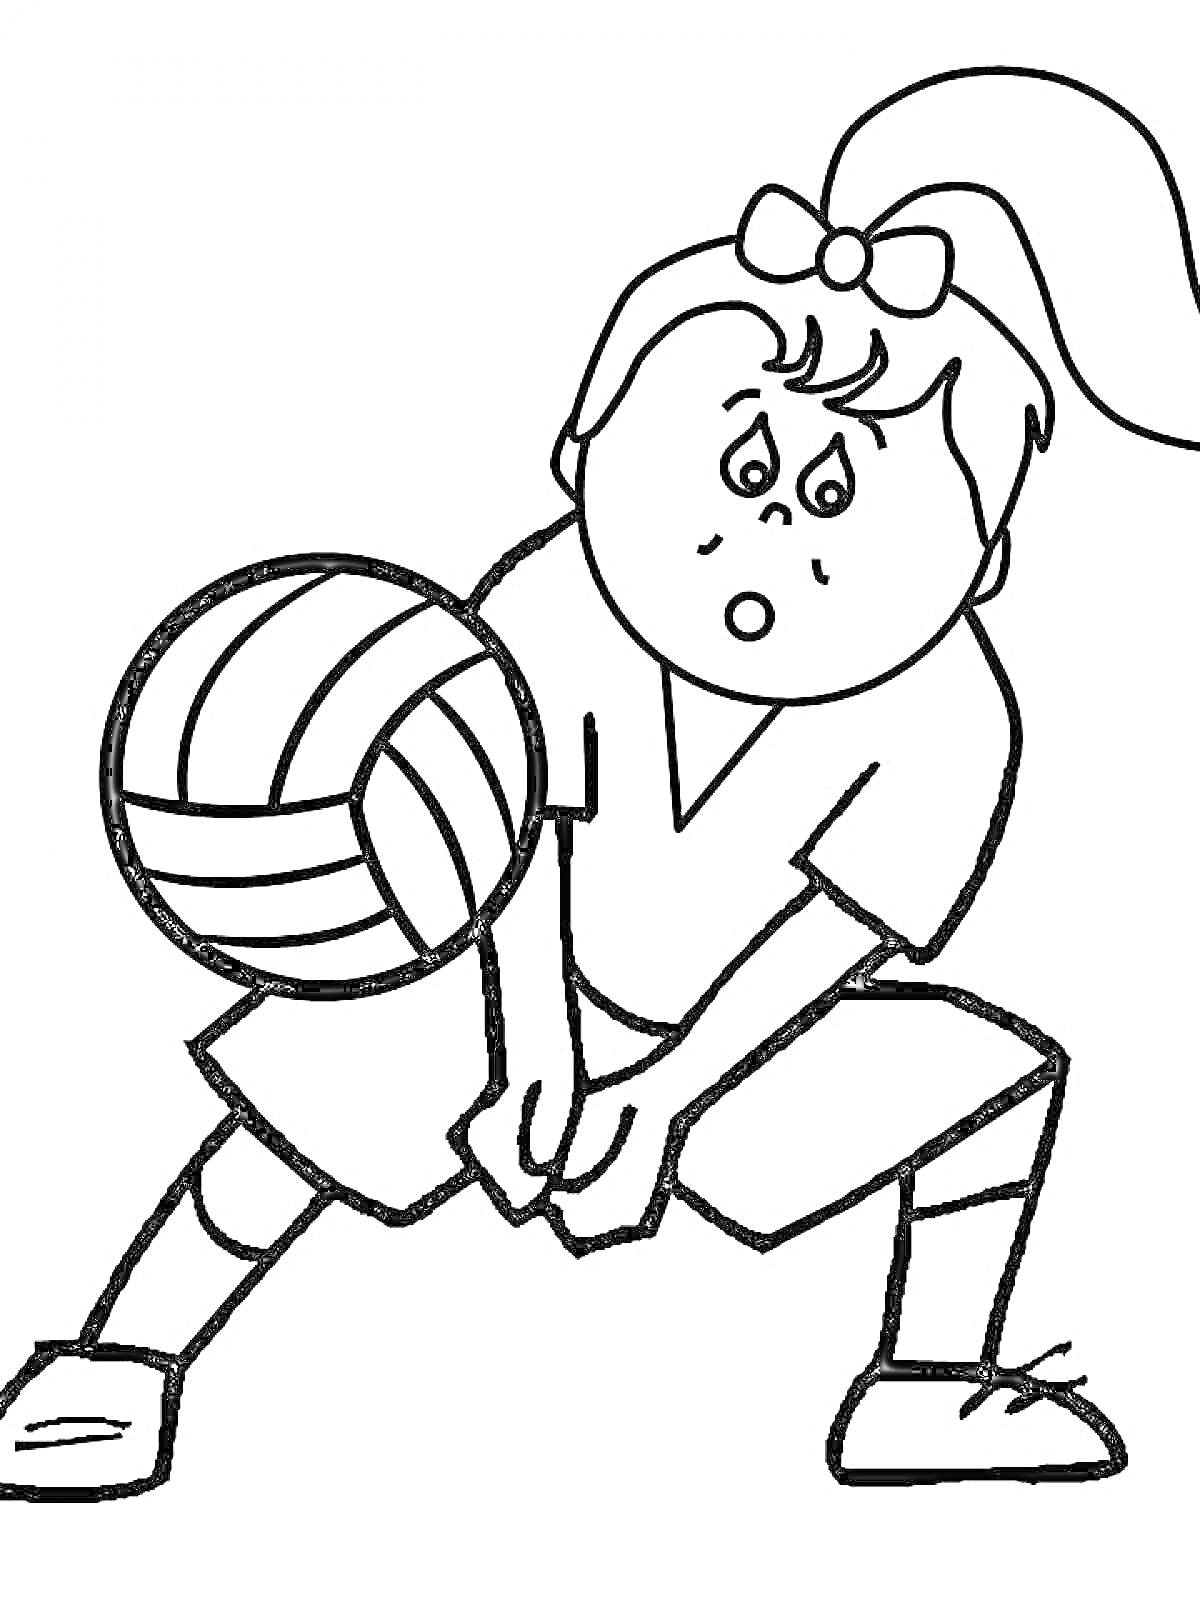 Девочка играет в волейбол, мяч в полёте, девочка в спортивной форме с хвостиком на голове